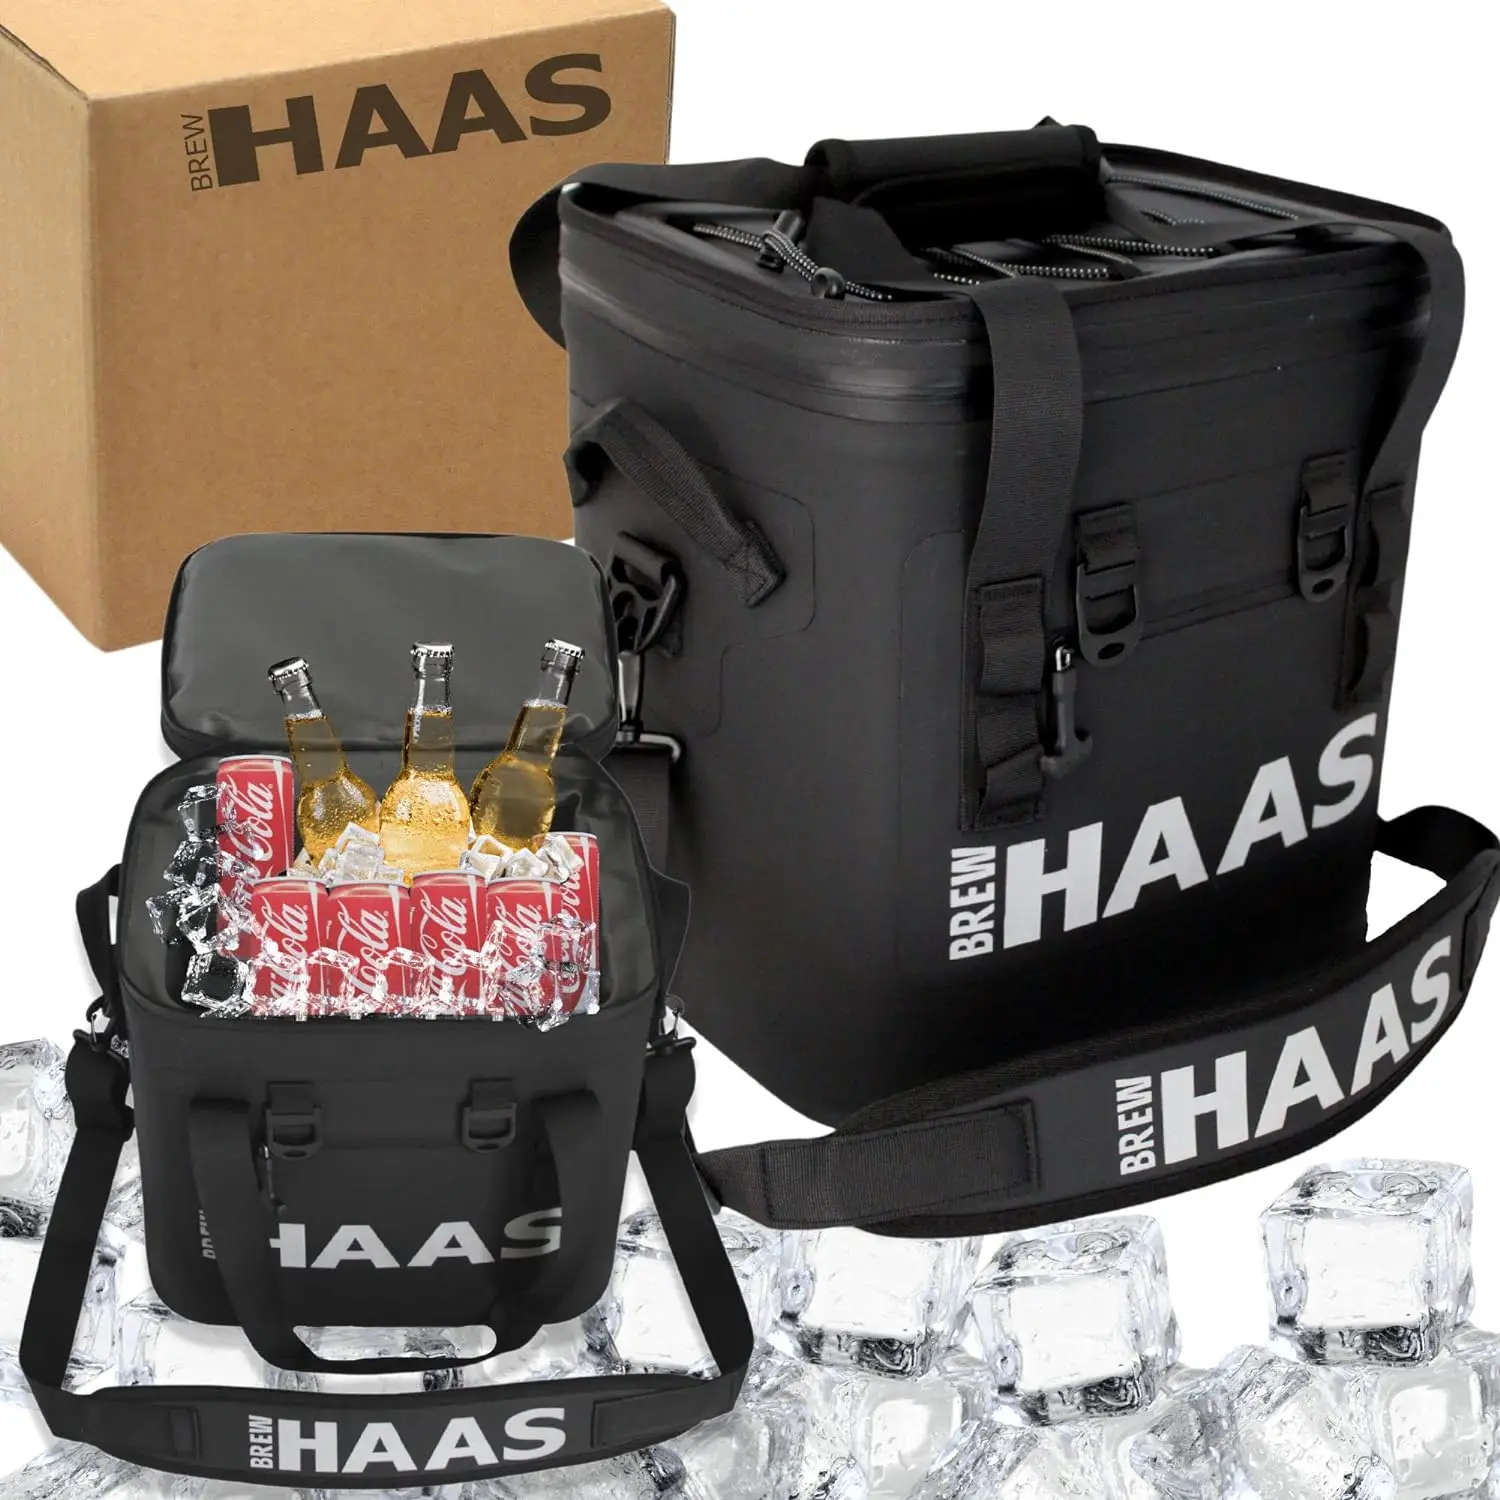 

HAAS мягкий изолированный герметичный охладитель, держатель для 24 банок, матовый черный, изолированный мешок, герметичный, водонепроницаемый, сохраняет холодный лед f